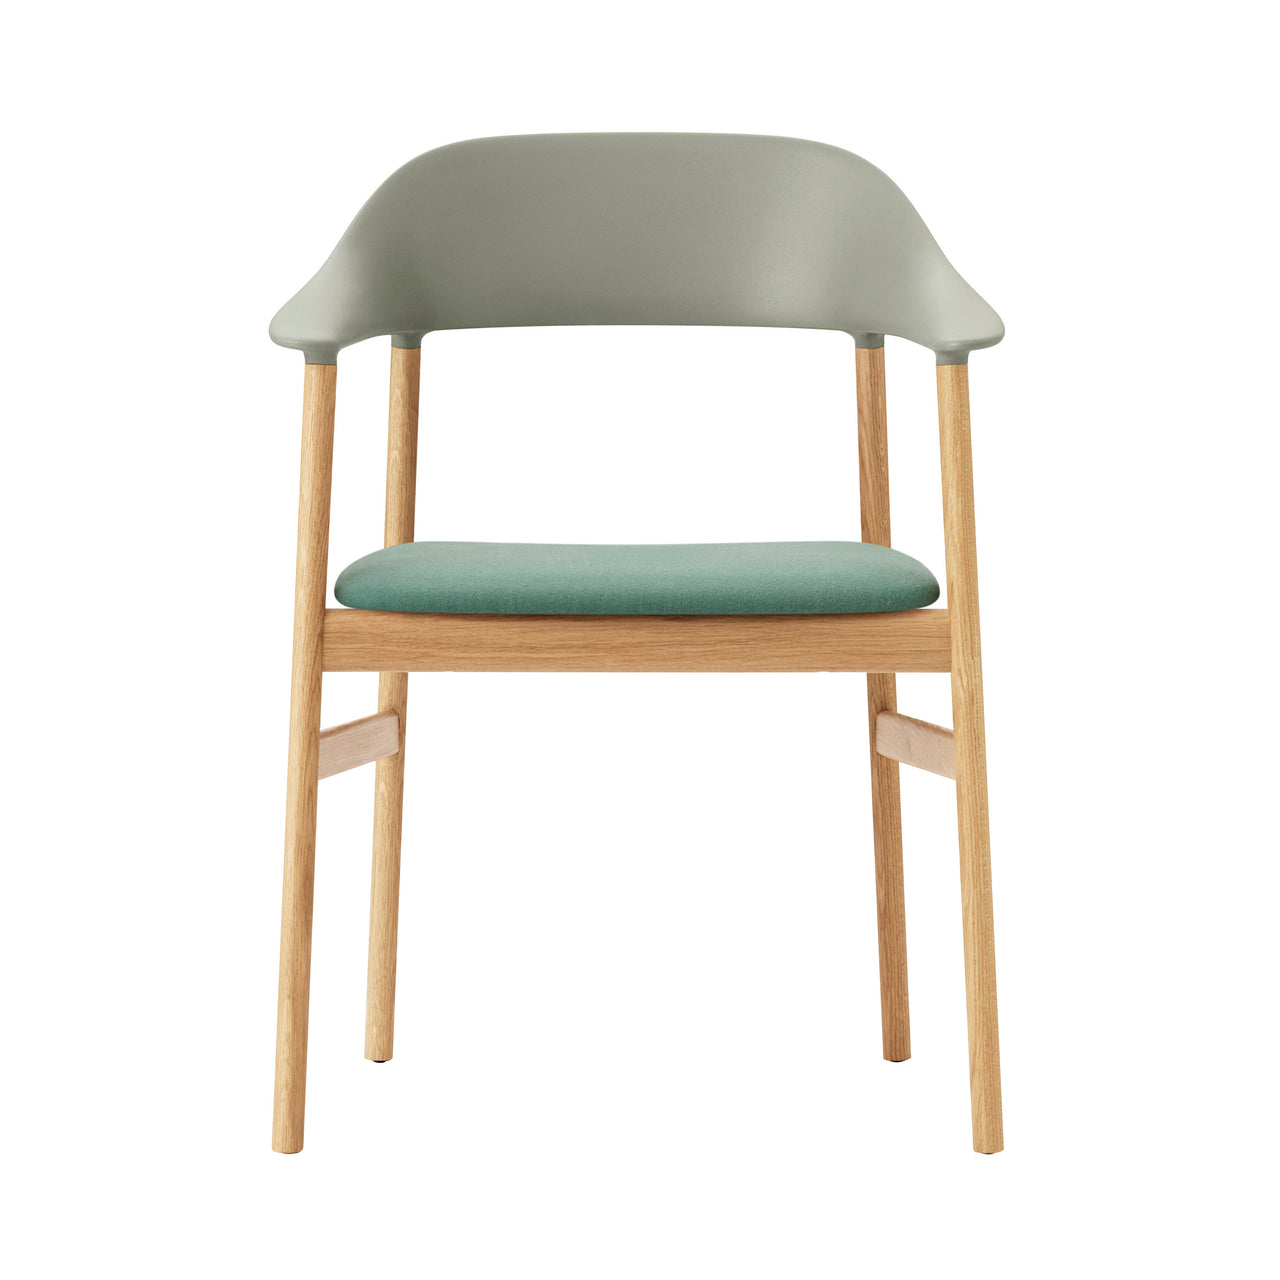 Herit Armchair: Upholstered + Oak + Dusty Green + Synergy Dusty Green